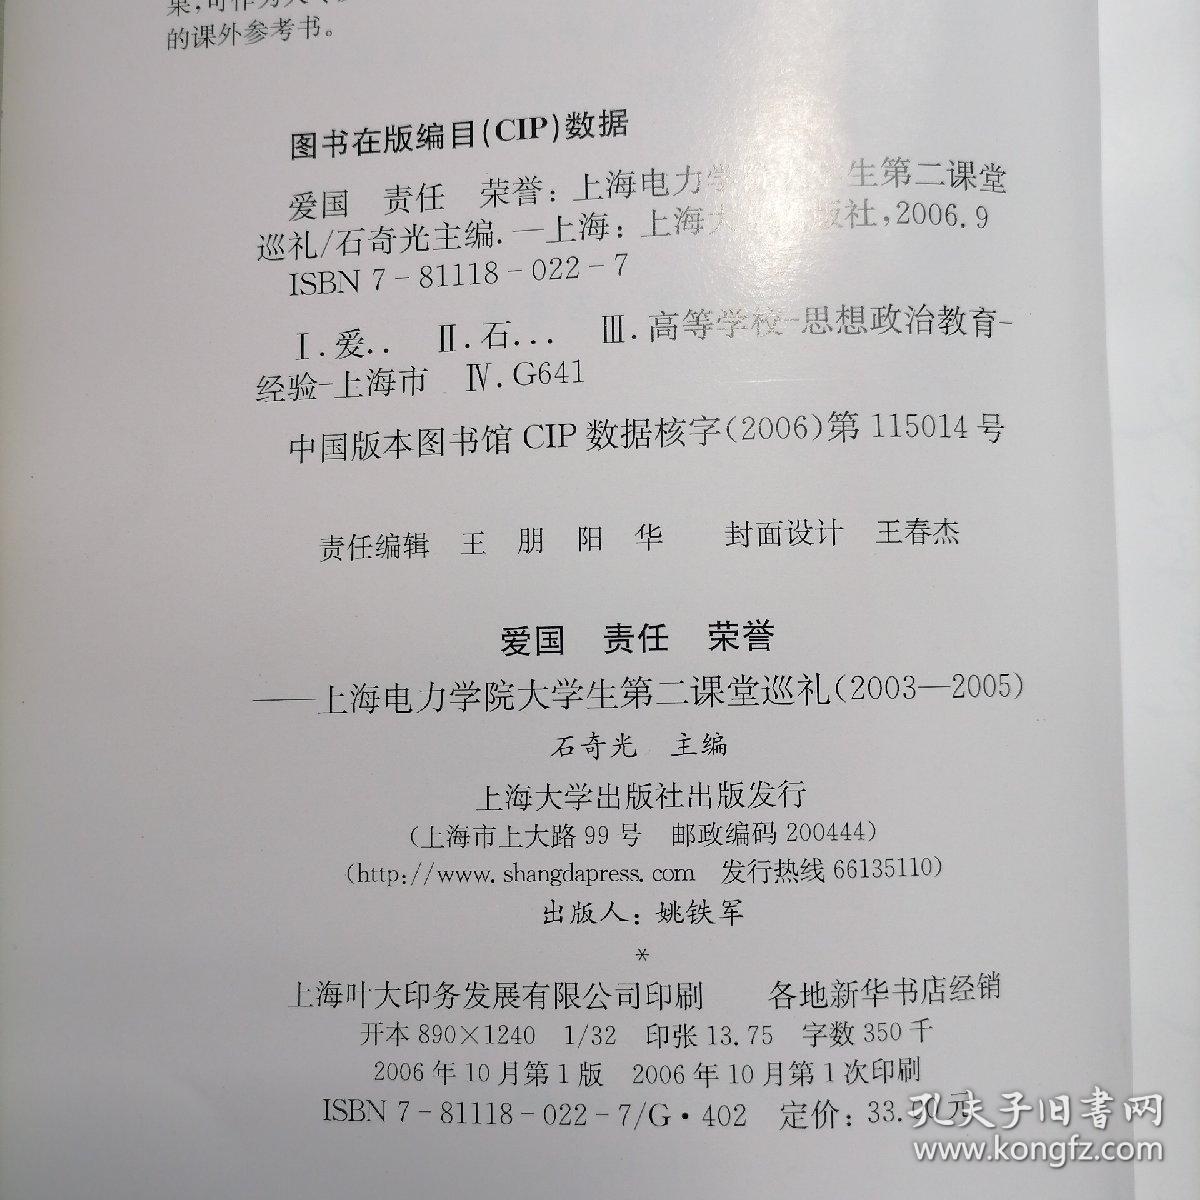 爱国 责任 荣誉:上海电力学院大学生第二课堂巡礼(2003-2005)